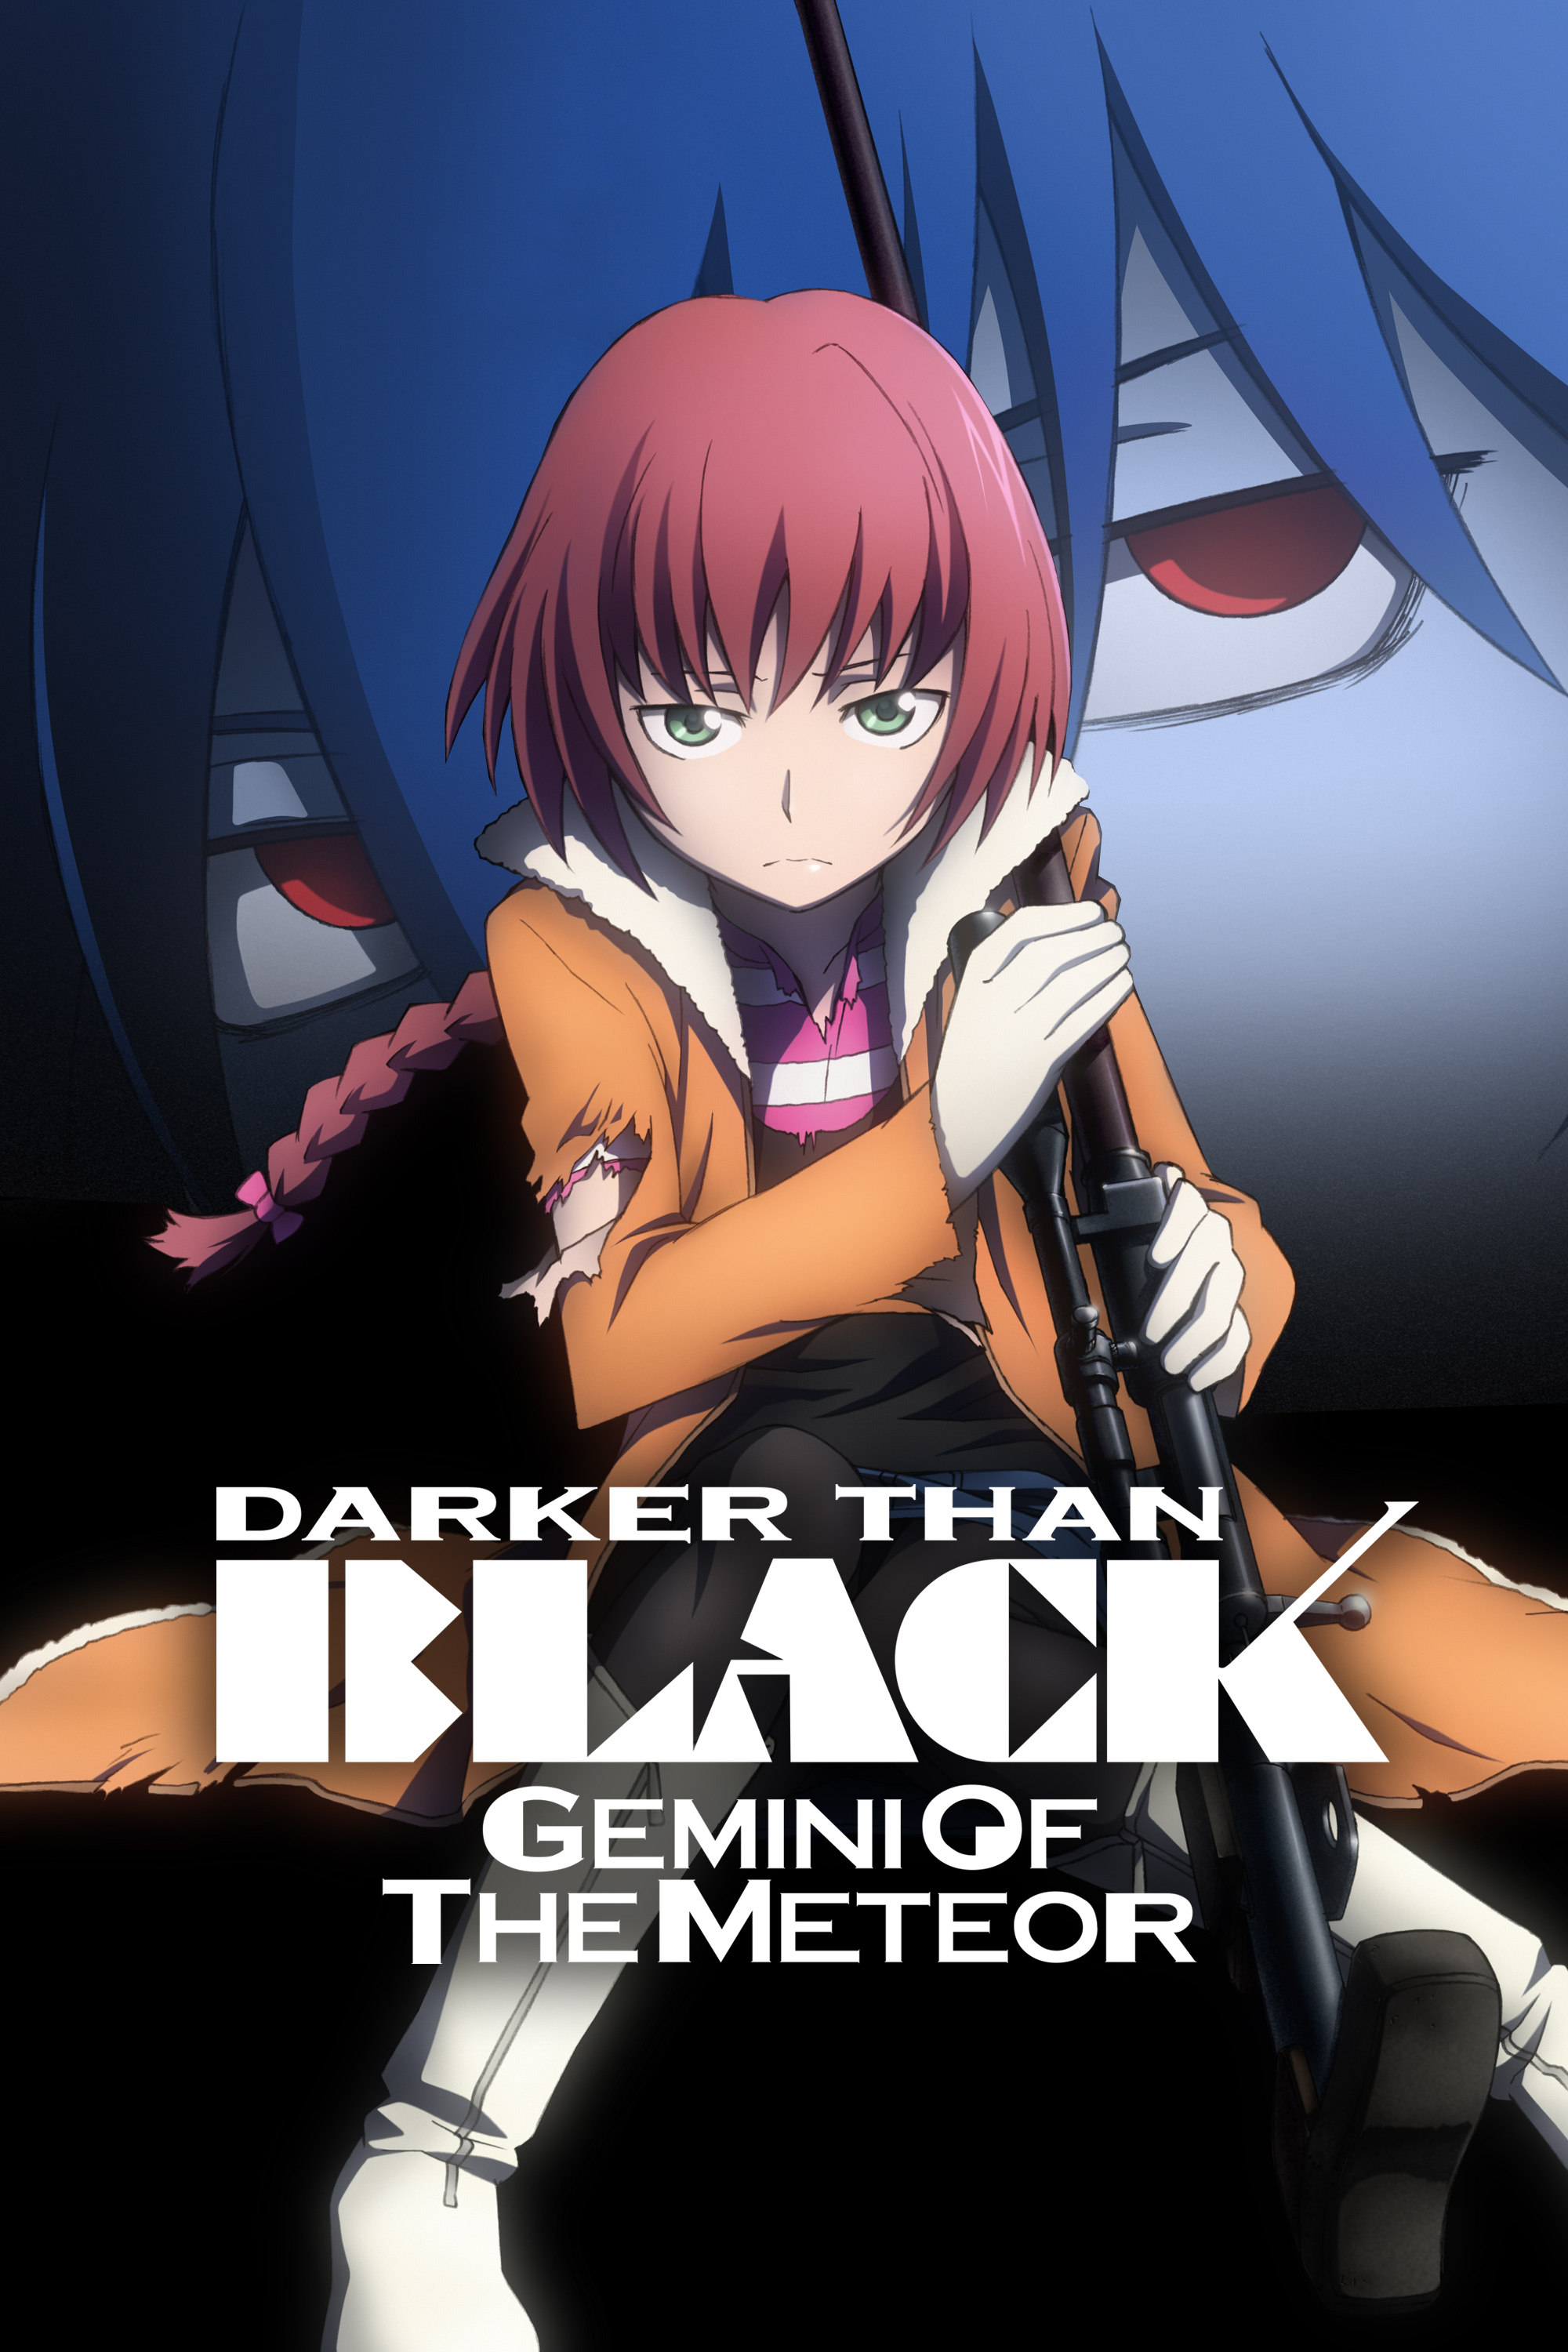 Black darker than Darker Than